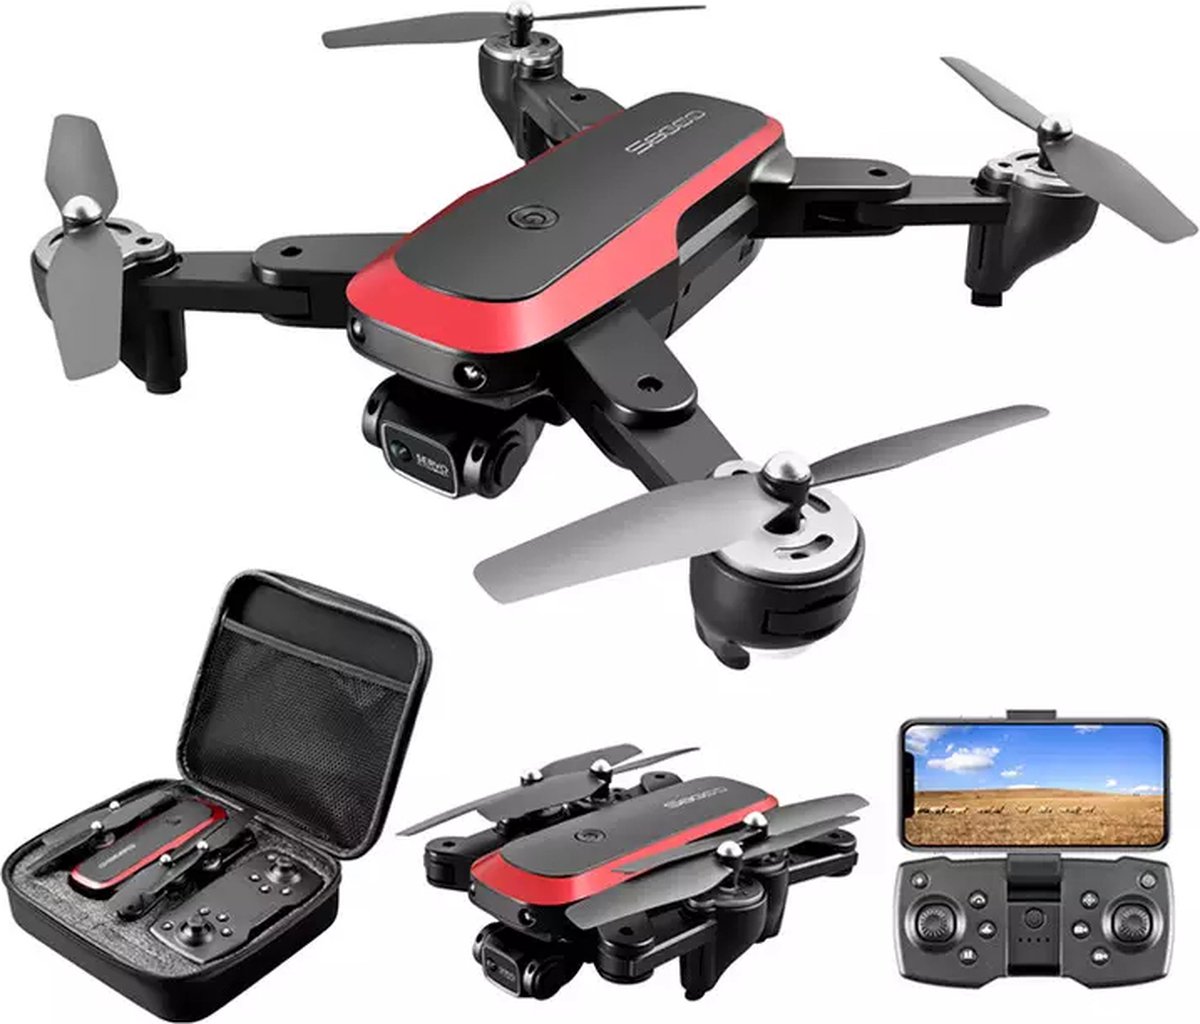 Quad Drone met Full HD Dual Camera 50x Zoom en Brushless Motor voor langere Vliegduur - Optical Flow Positionering voor nog betere Stabiliteit - Drones - Voor Buiten / Binnen - Gratis Extra Accu, Opbergkoffer en Extra set Propellers - Quadcopter